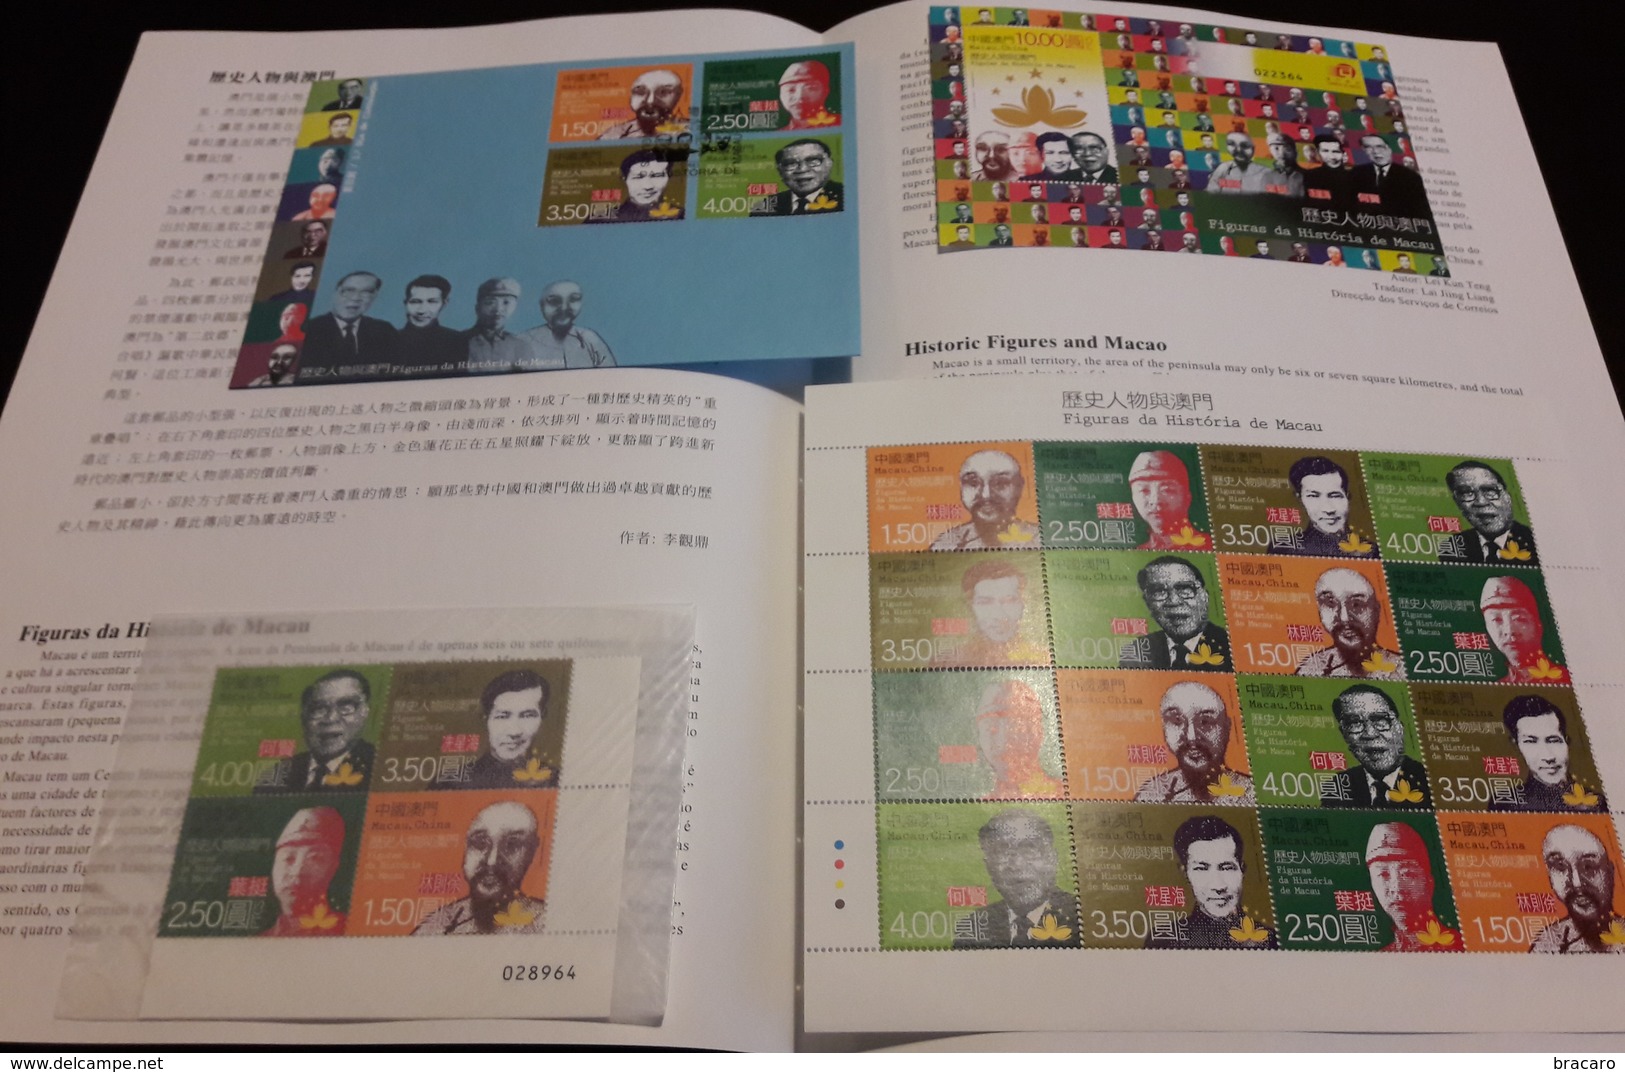 MACAU / MACAO (CHINA) - Historic Figures 2011 - Stamps (1/4 Sheet) MNH + Block MNH + Miniature Sheet MNH + FDC + Leaflet - Collezioni & Lotti